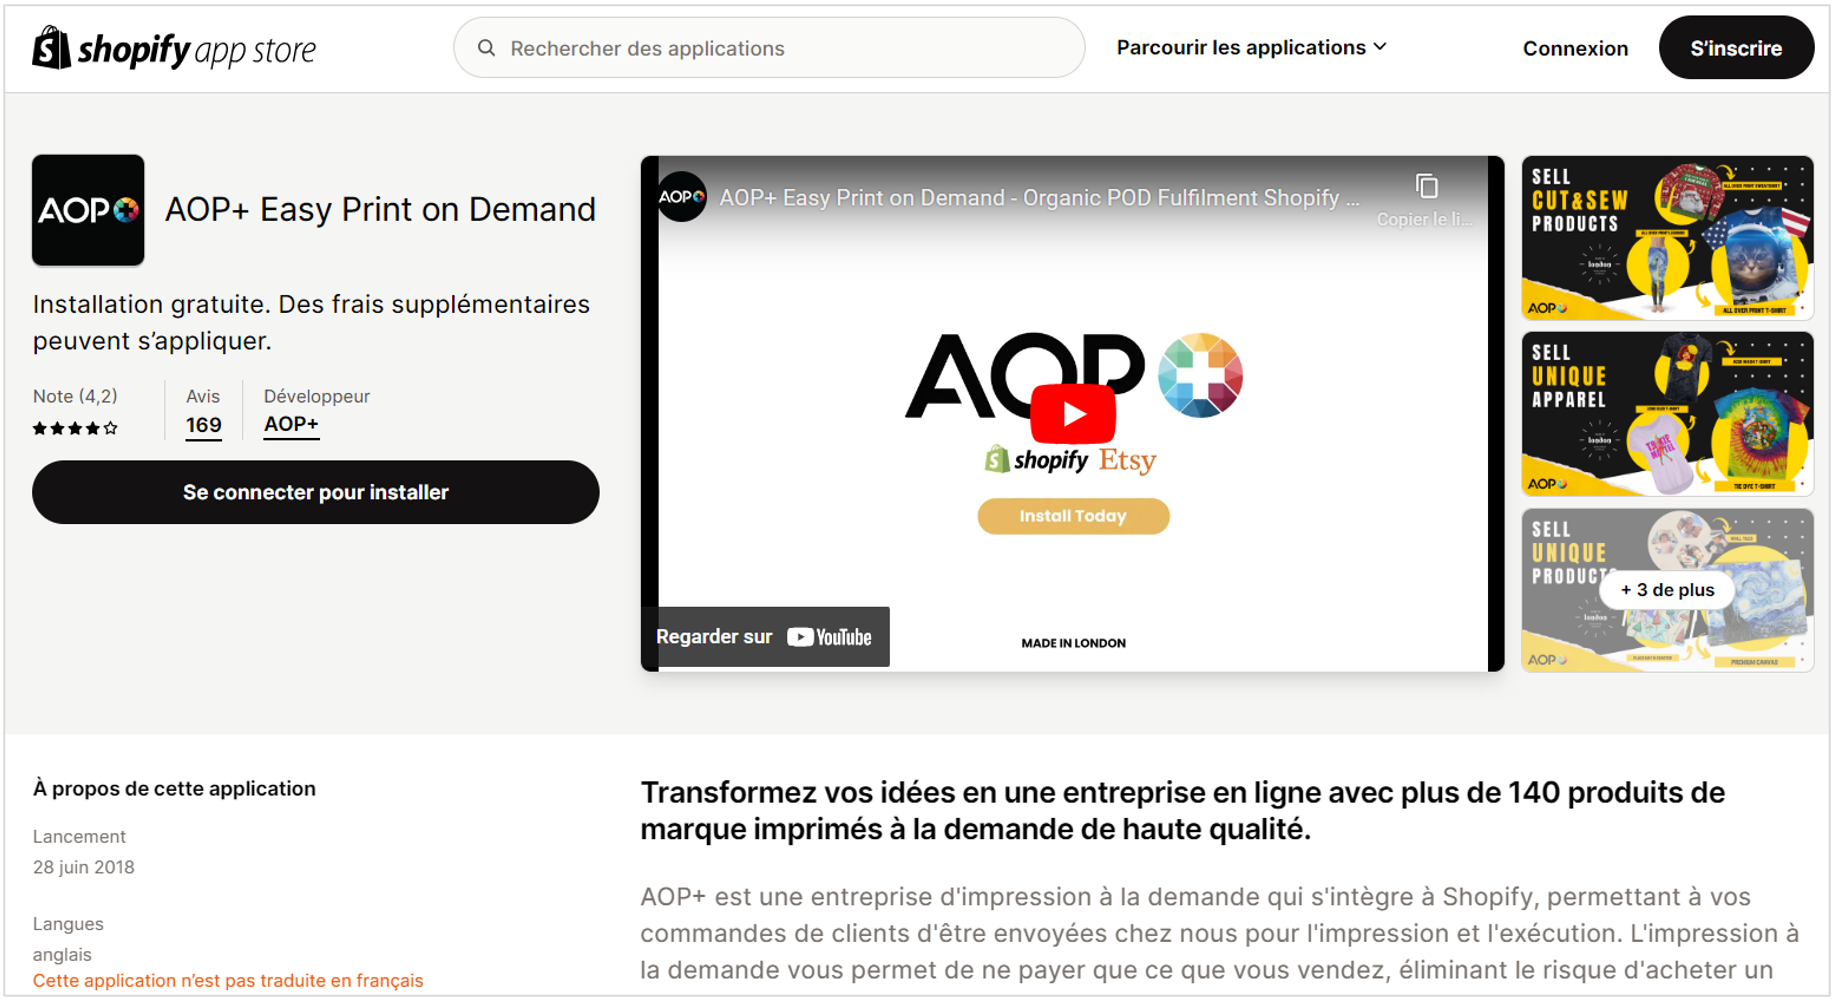 présentation d'aop : AOP+ est une entreprise d'impression à la demande qui s'intègre à Shopify